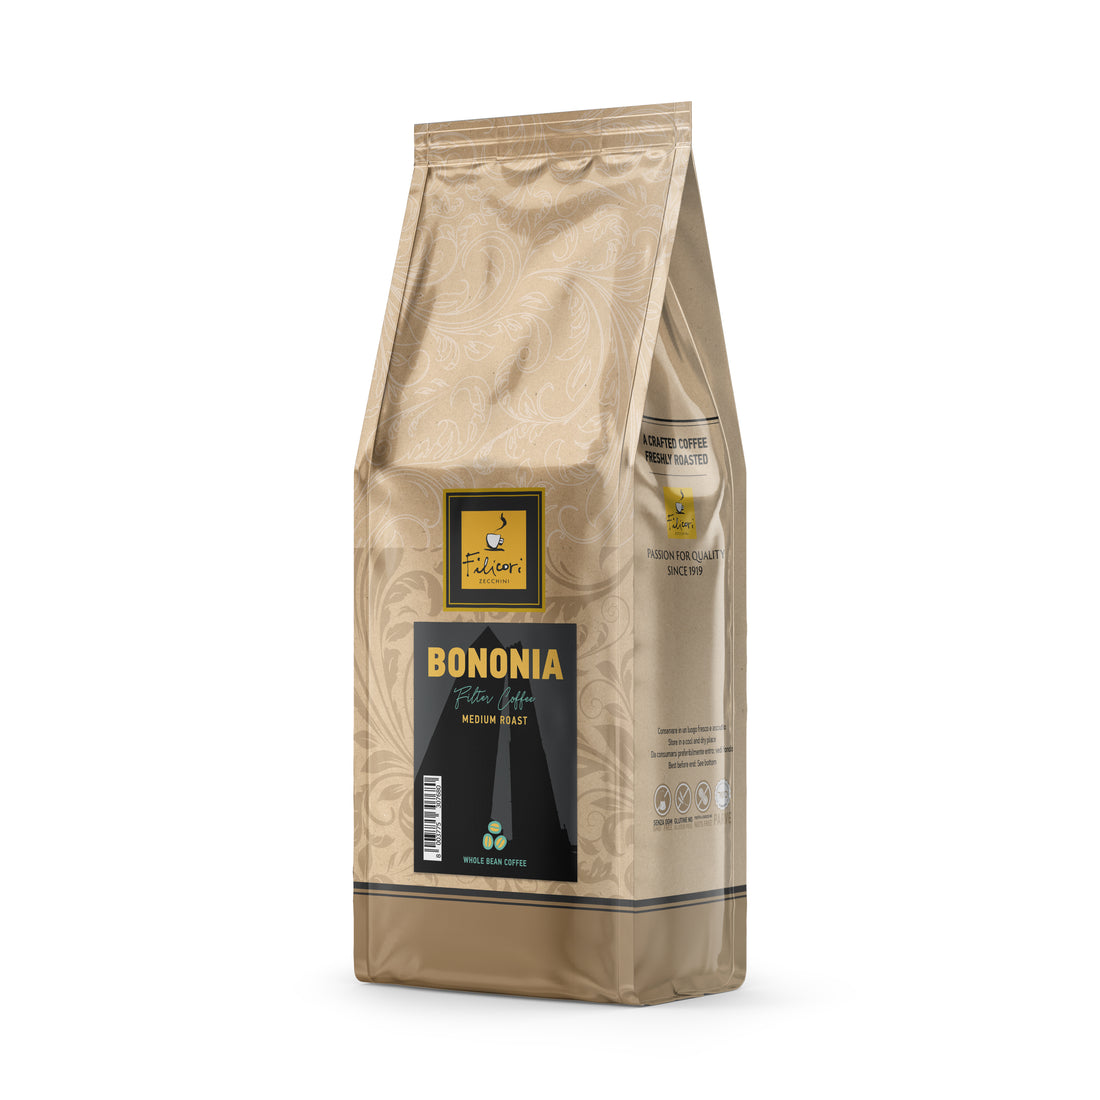 Filicori Zecchini Bononia Whole Bean Coffee